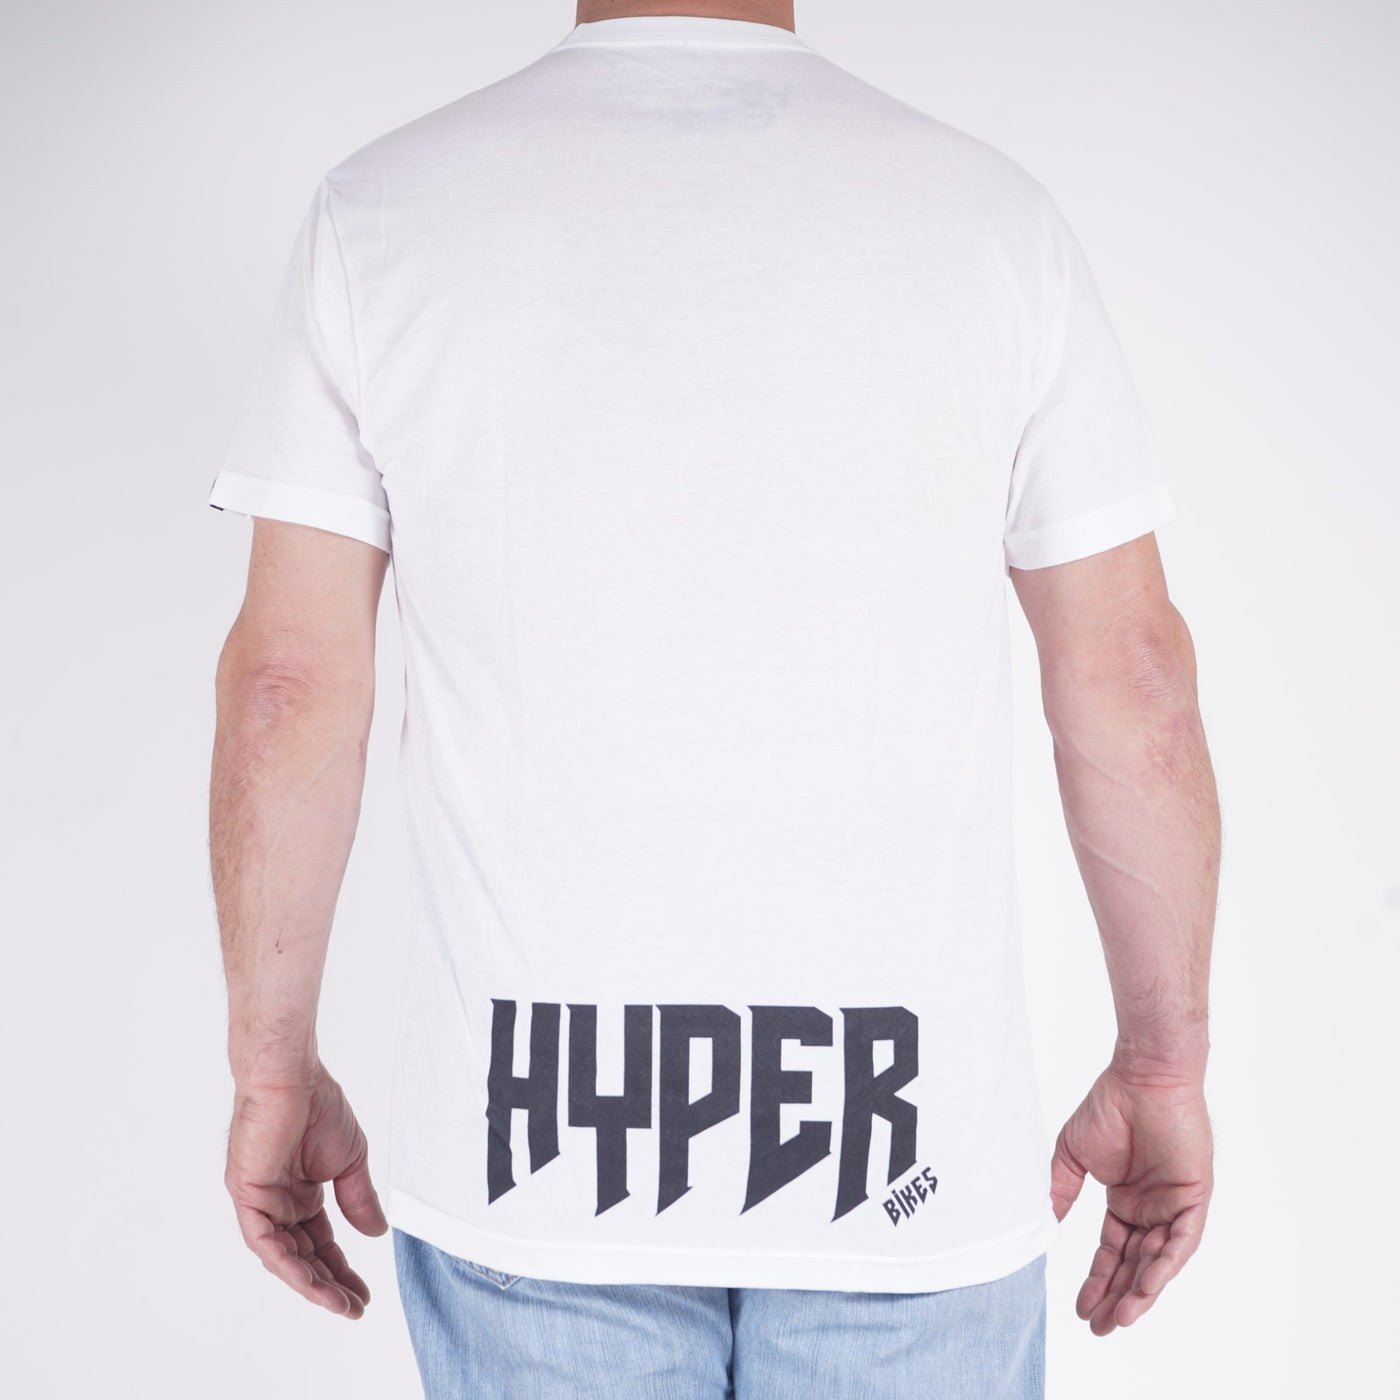 Hyper H Tee T-Shirt